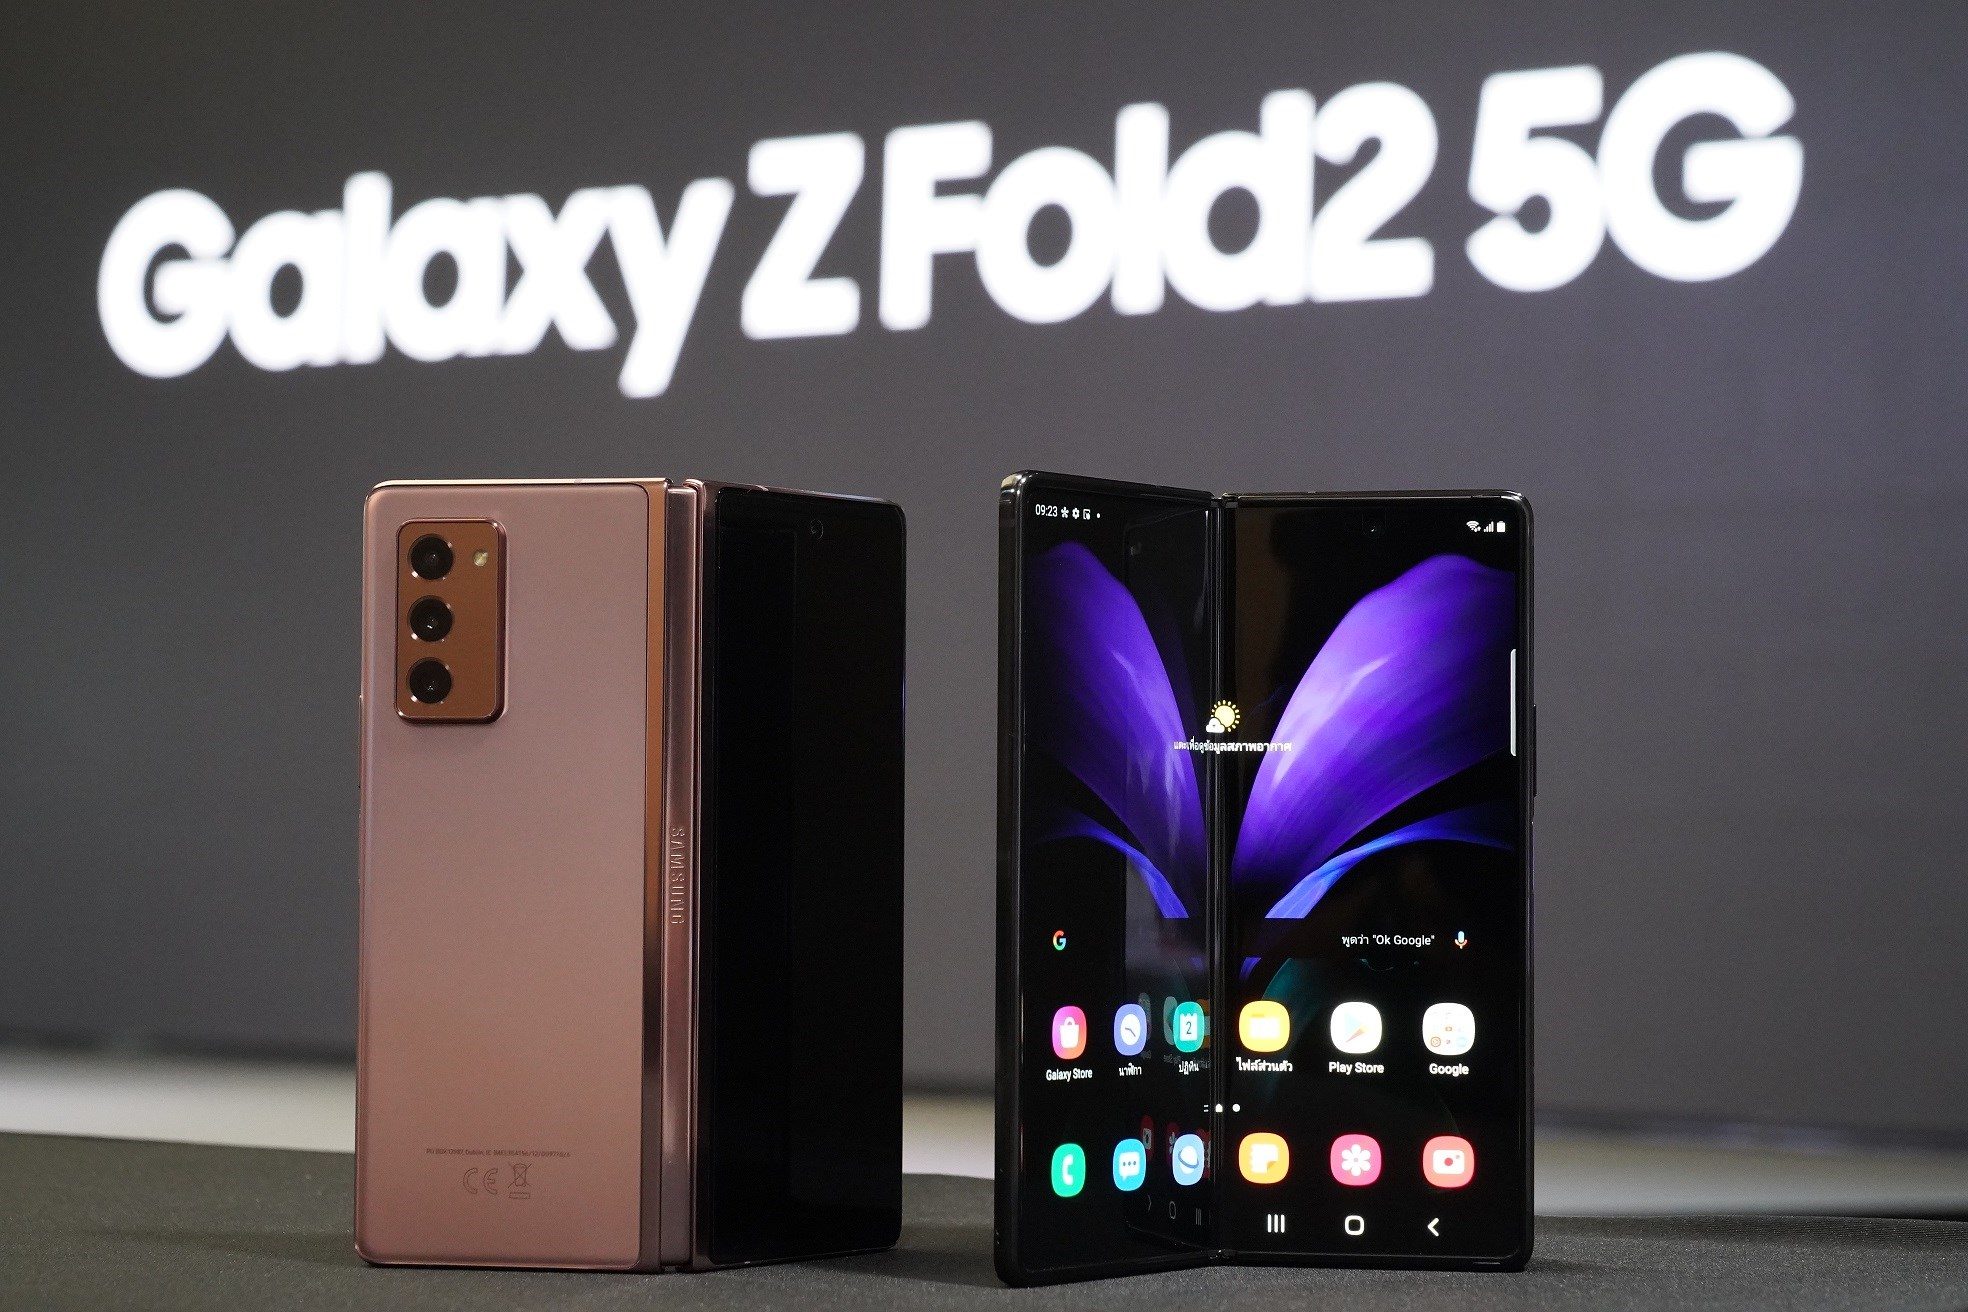 เปิดจองกลุ่มแรกของโลก ‘Galaxy Z Fold2 5G’ สุดยอดนวัตกรรมสมาร์ทโฟนแห่งยุค